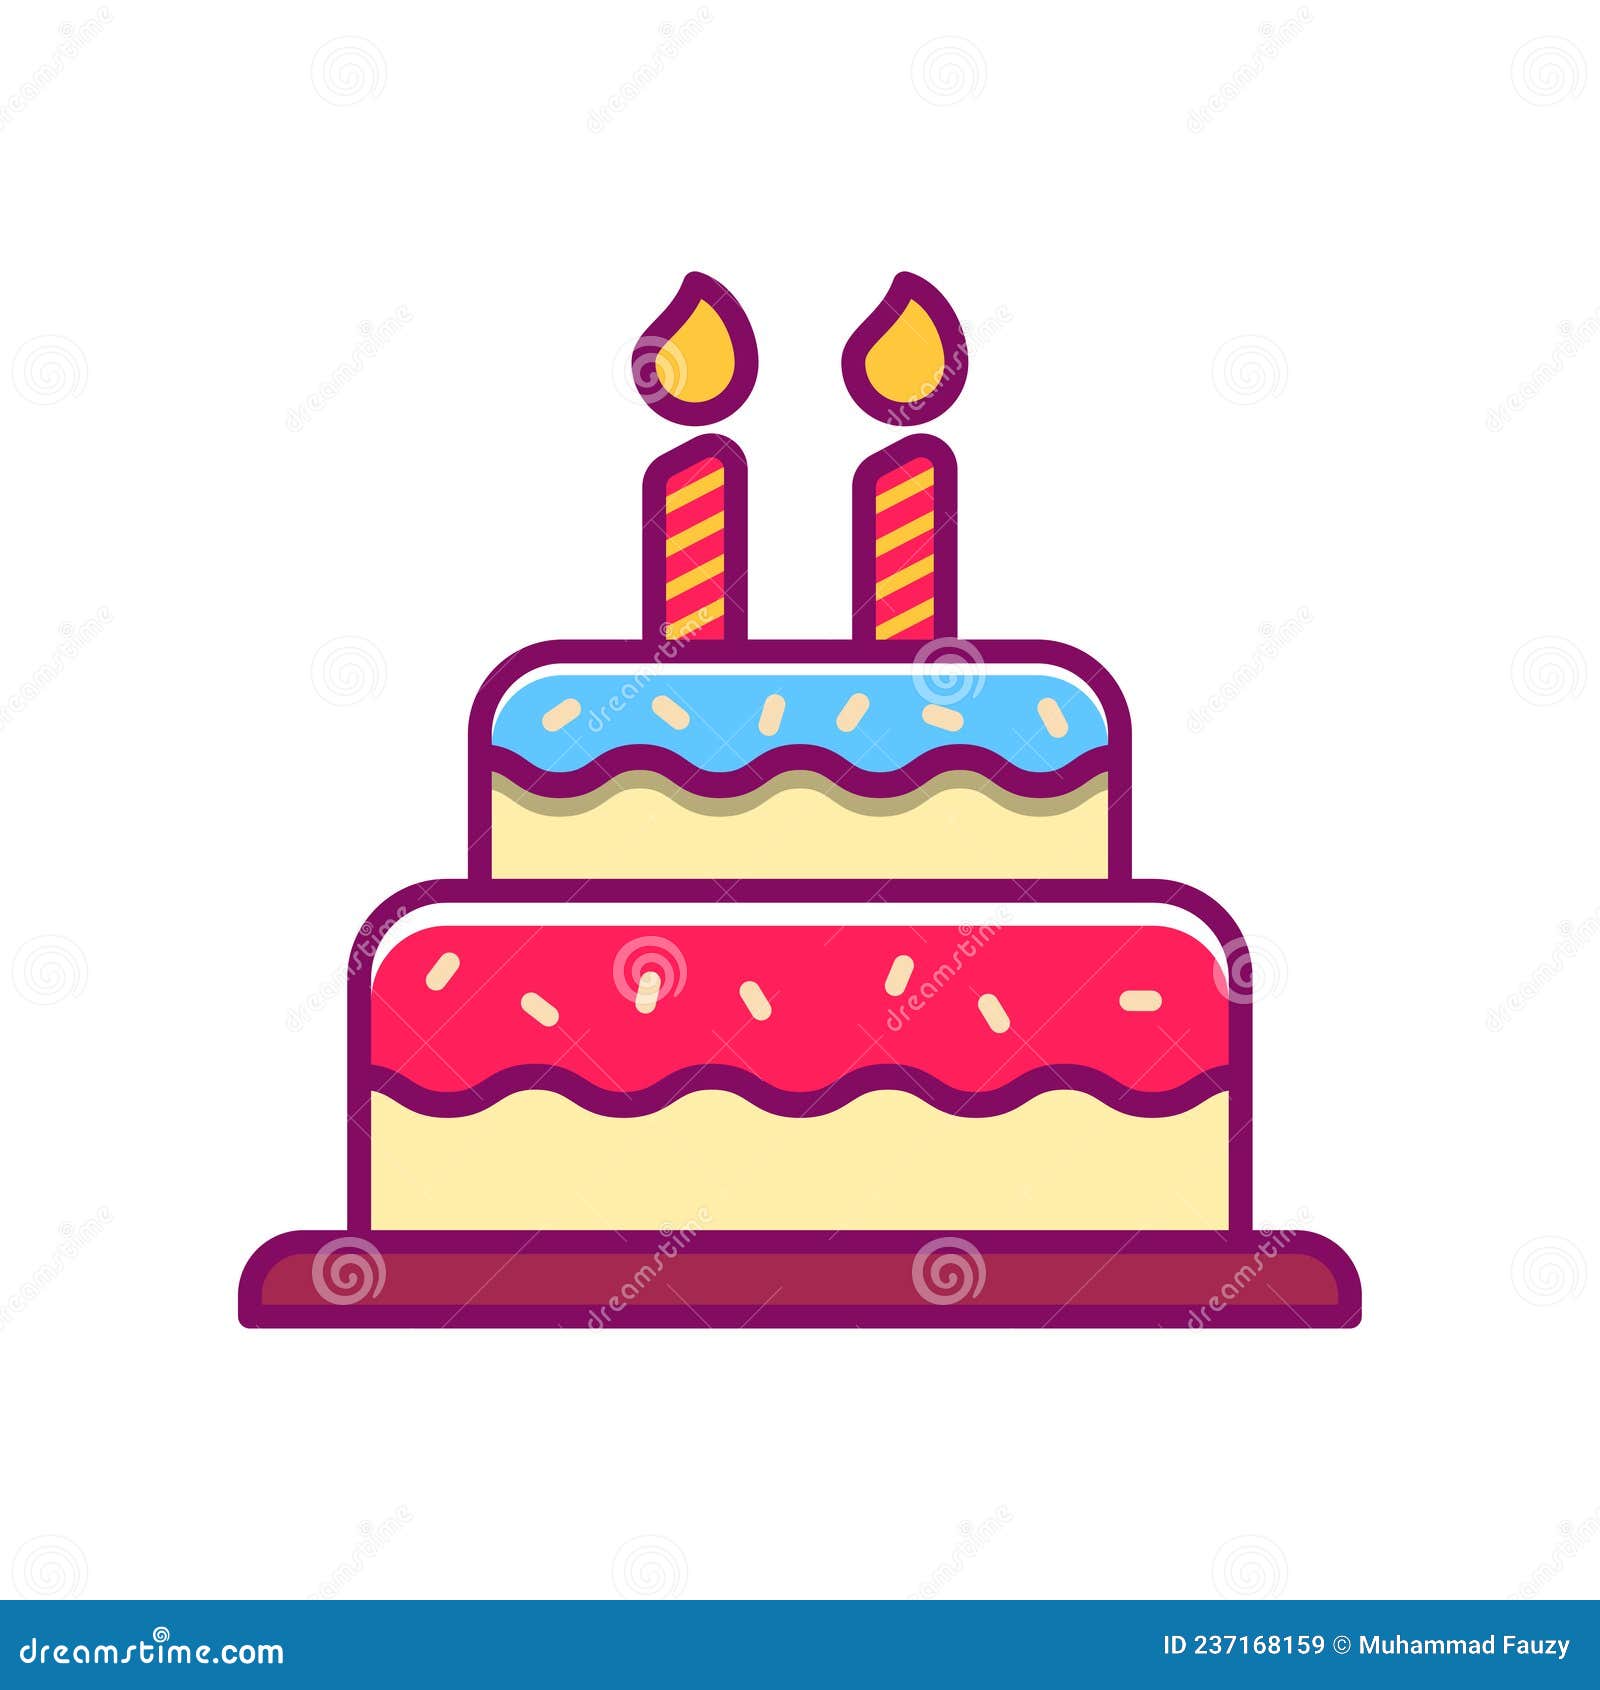 A ilustração de um bolo de aniversário